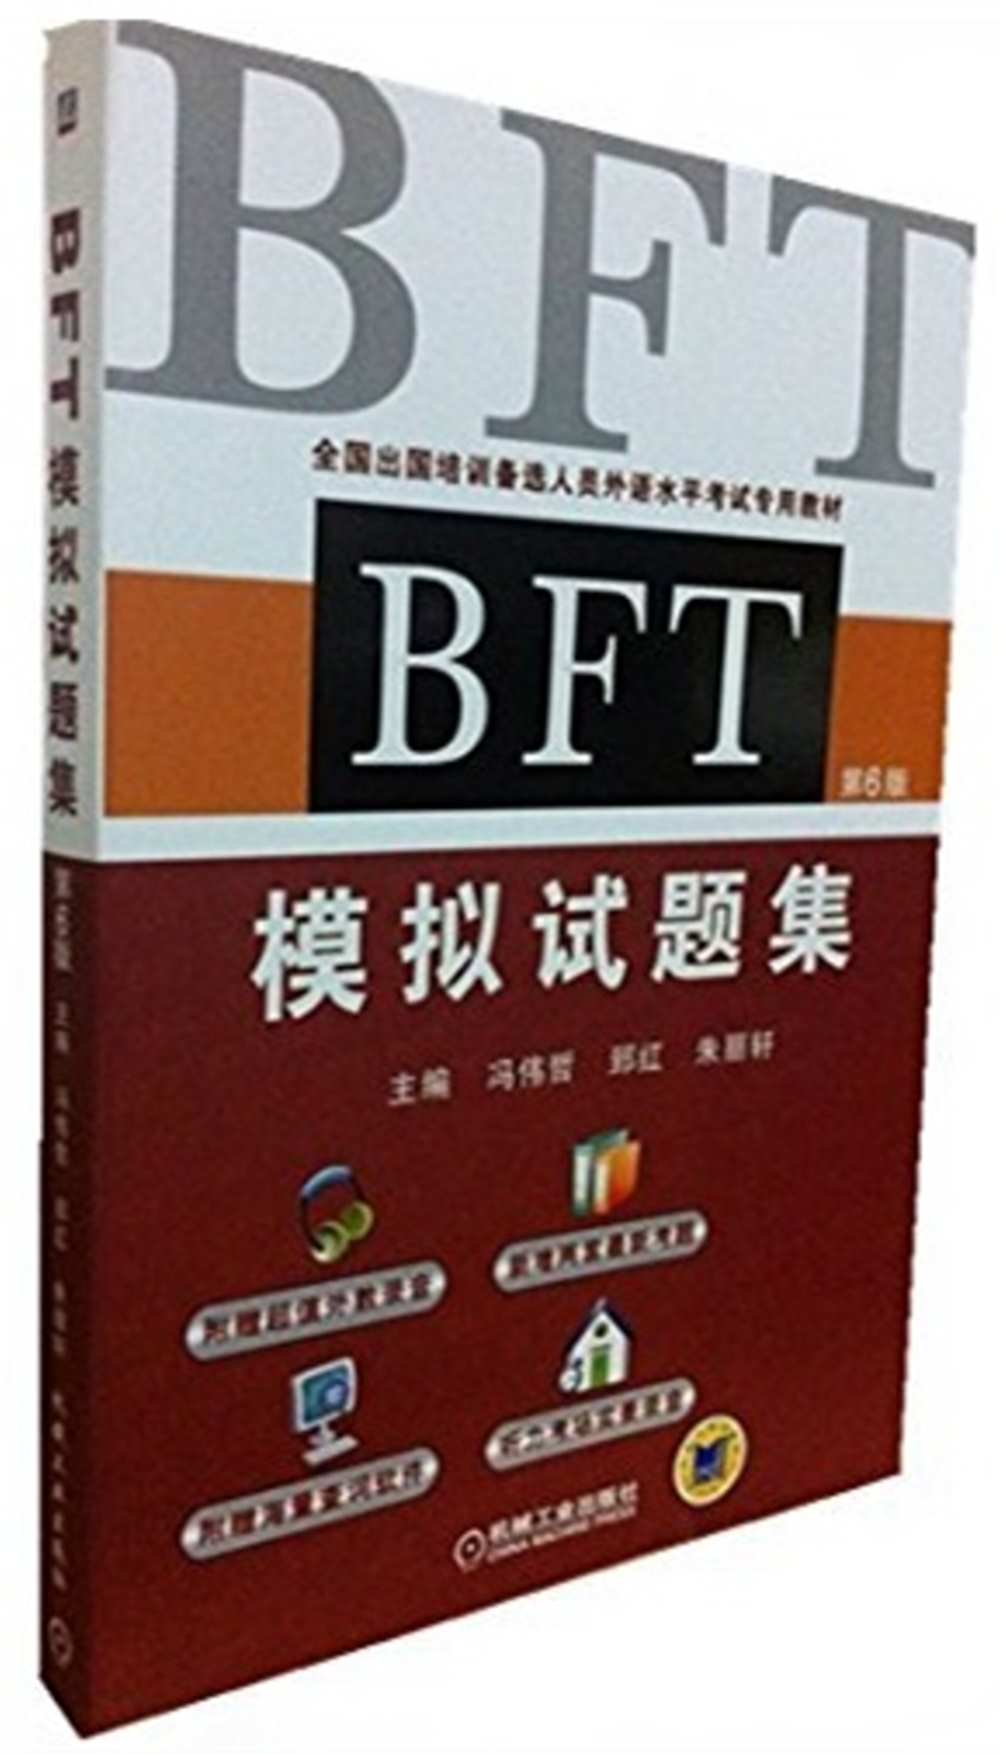 BFT模擬試題集(第6版)